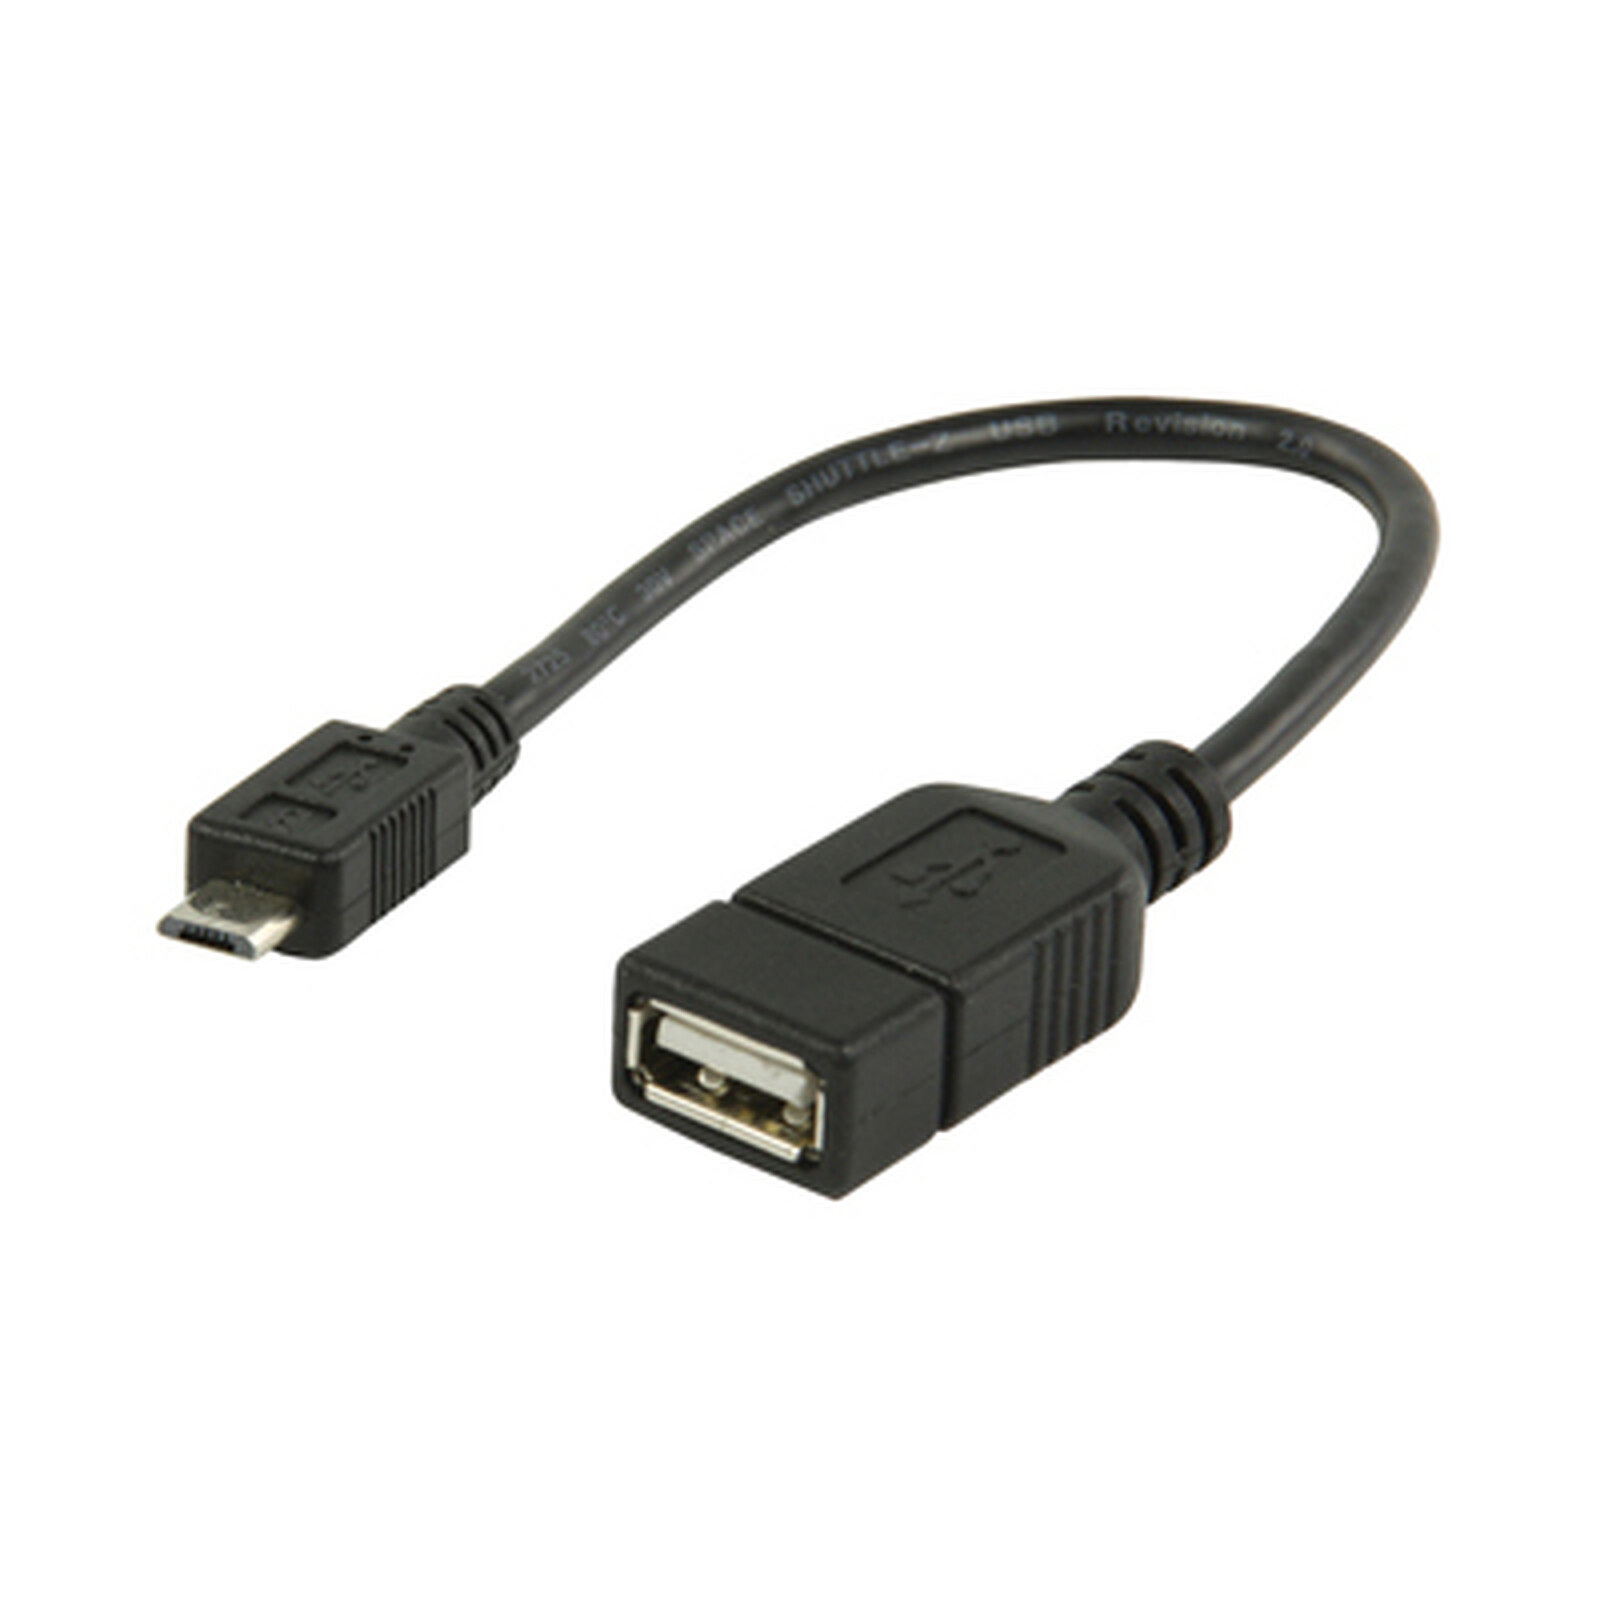 USB A vers mini USB  B  adaptateur-mâle/mâle USB 2.0 